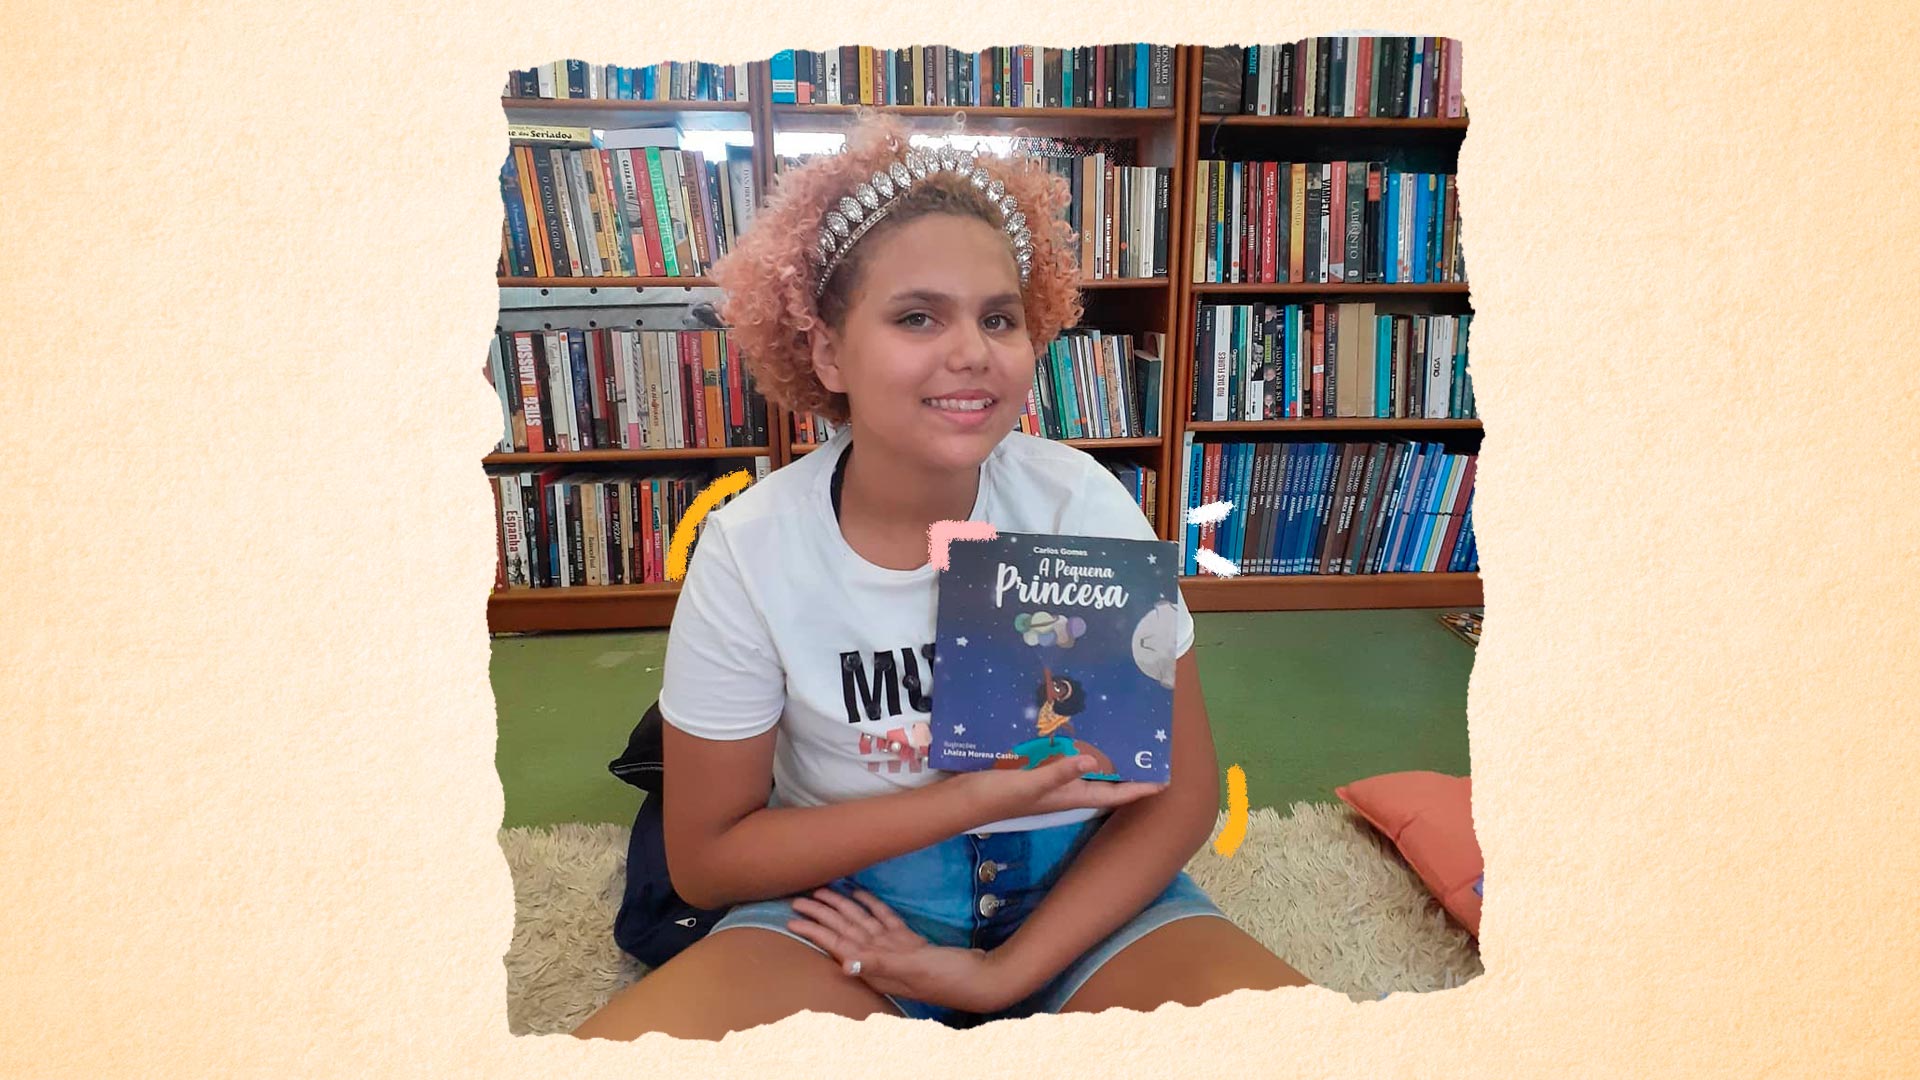 Imagem de Lua Oliveira sentada no chão da biblioteca segurando o livro A pequena princesa, dedicado a ela.